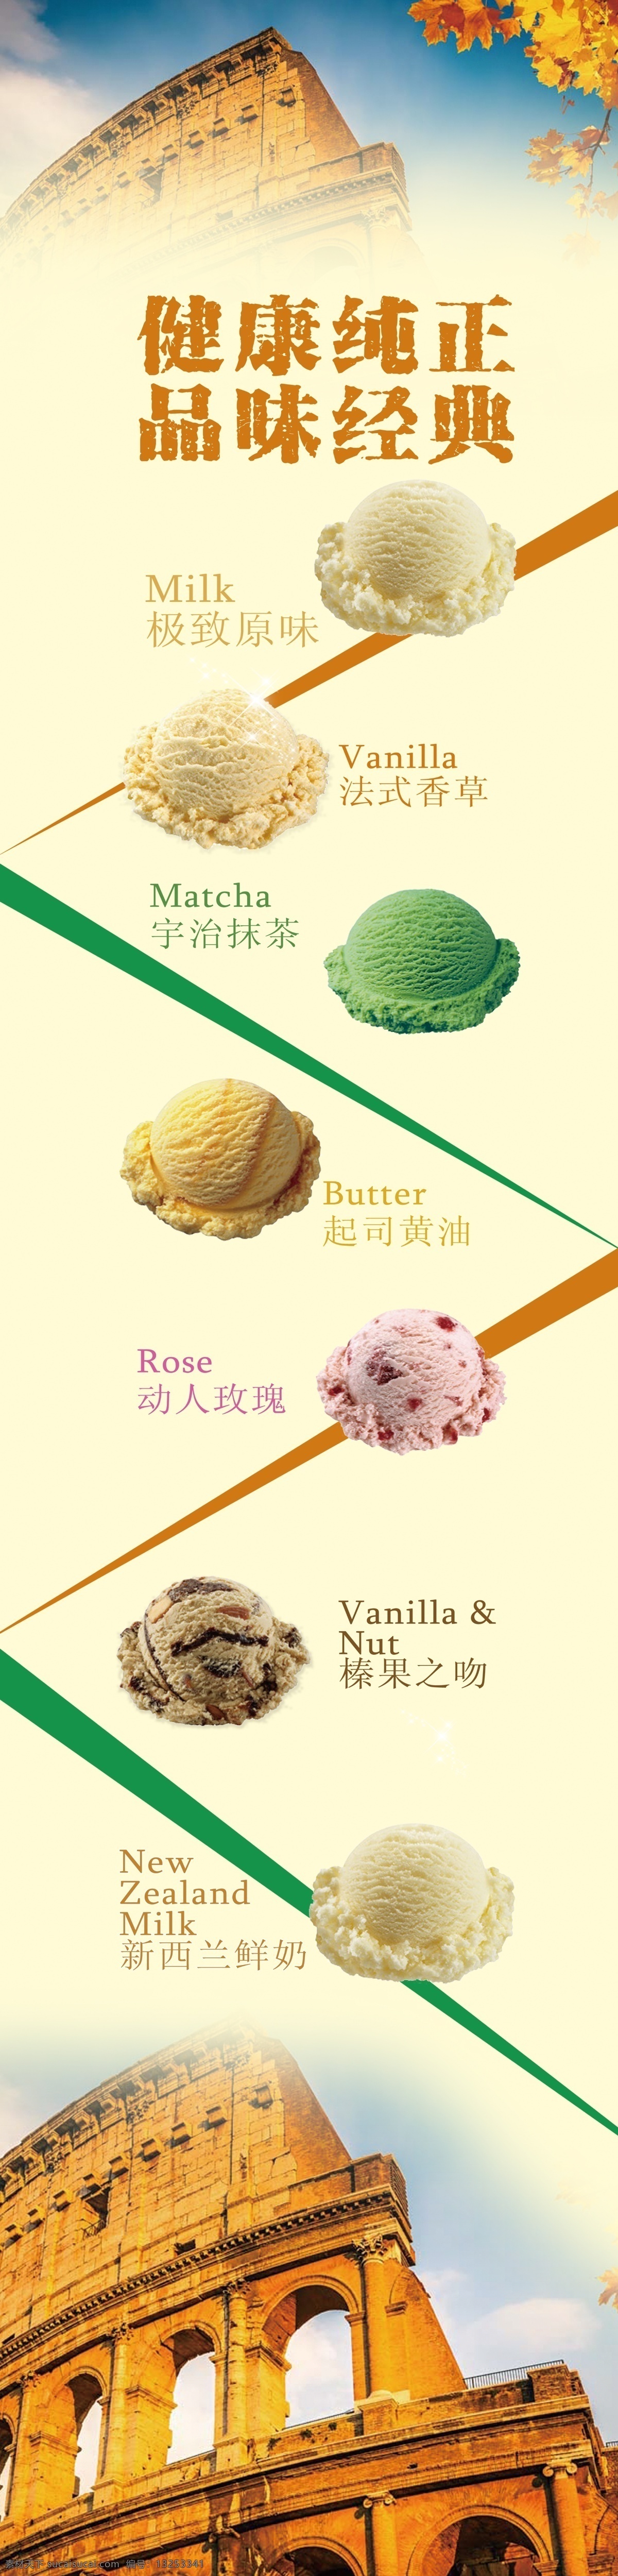 冰淇淋球灯箱 冰淇淋球 冰激凌球 抹茶冰激凌 玫瑰冰激凌 健康纯正 香草冰激凌 酸奶冰激凌